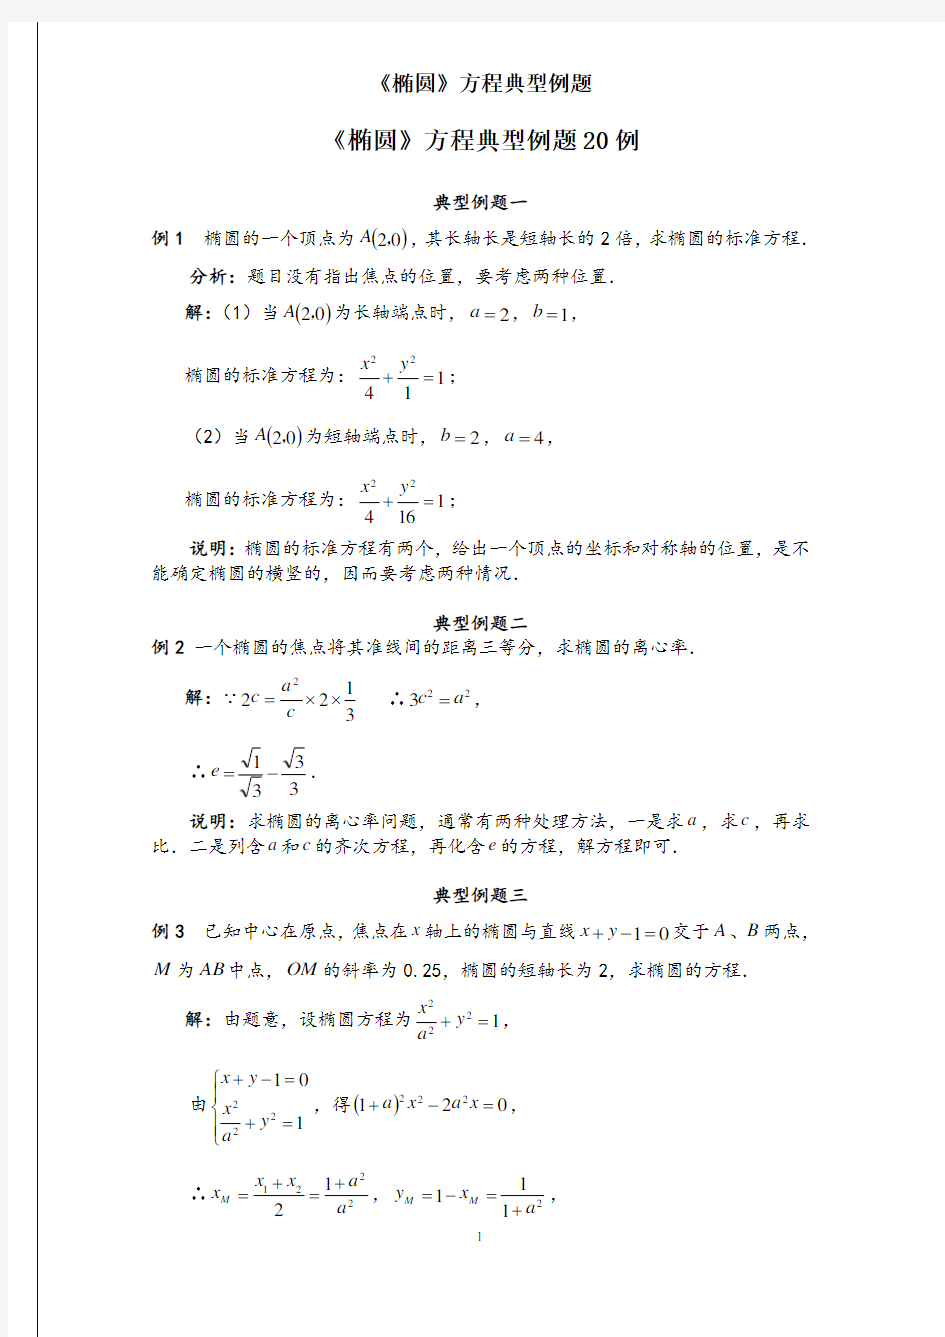 《椭圆》方程典型例题20例(含标准答案)